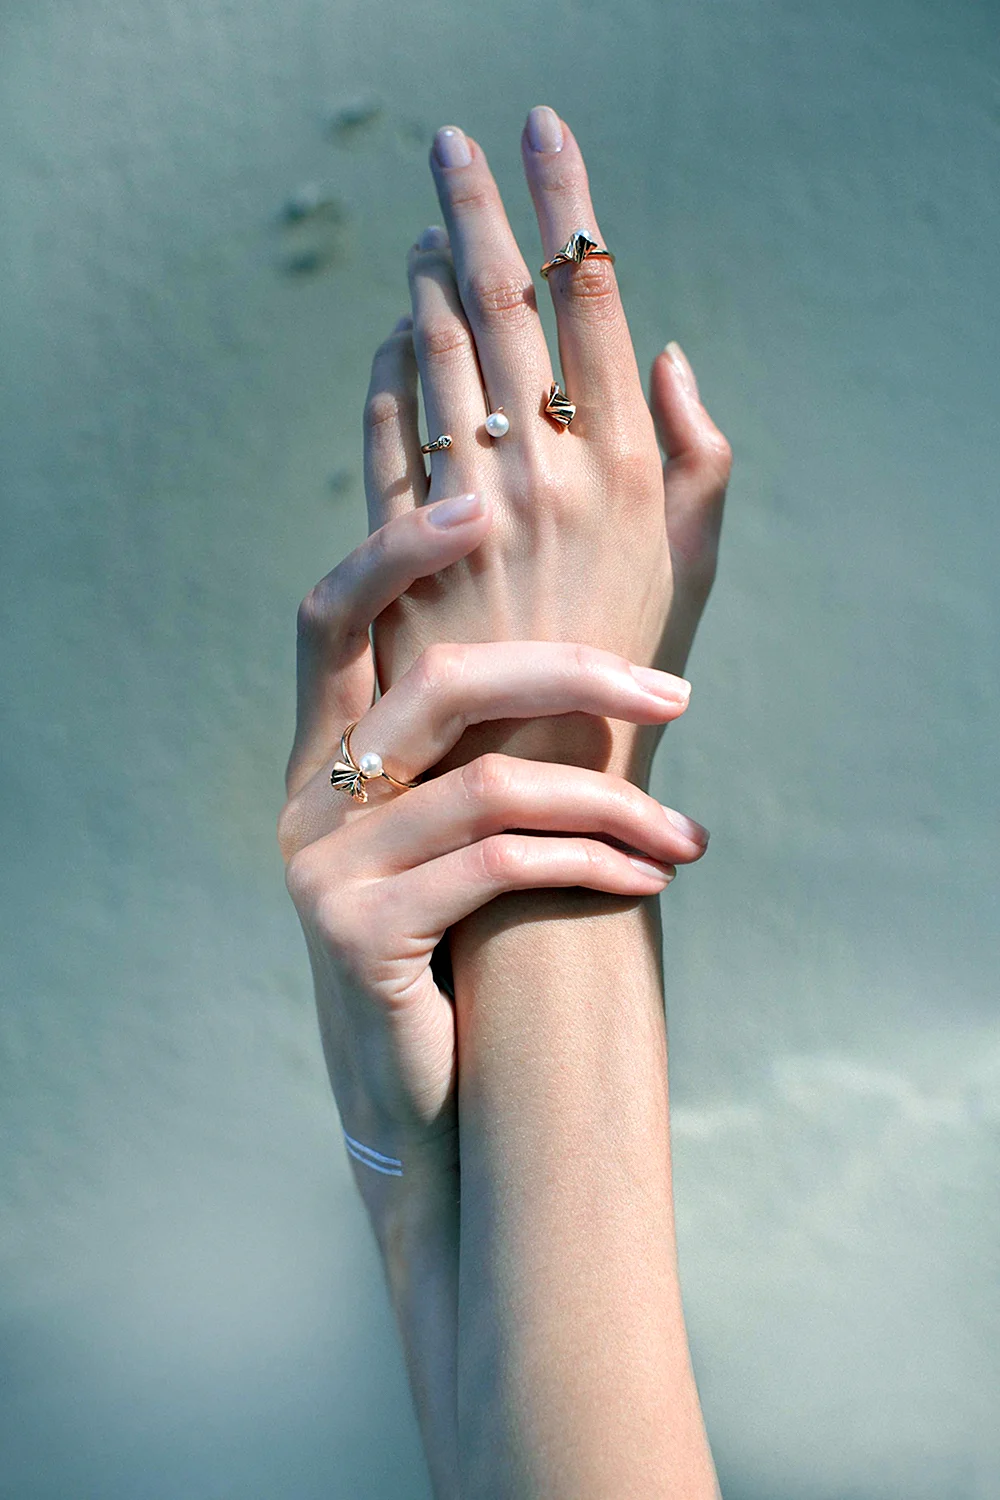 Женская рука